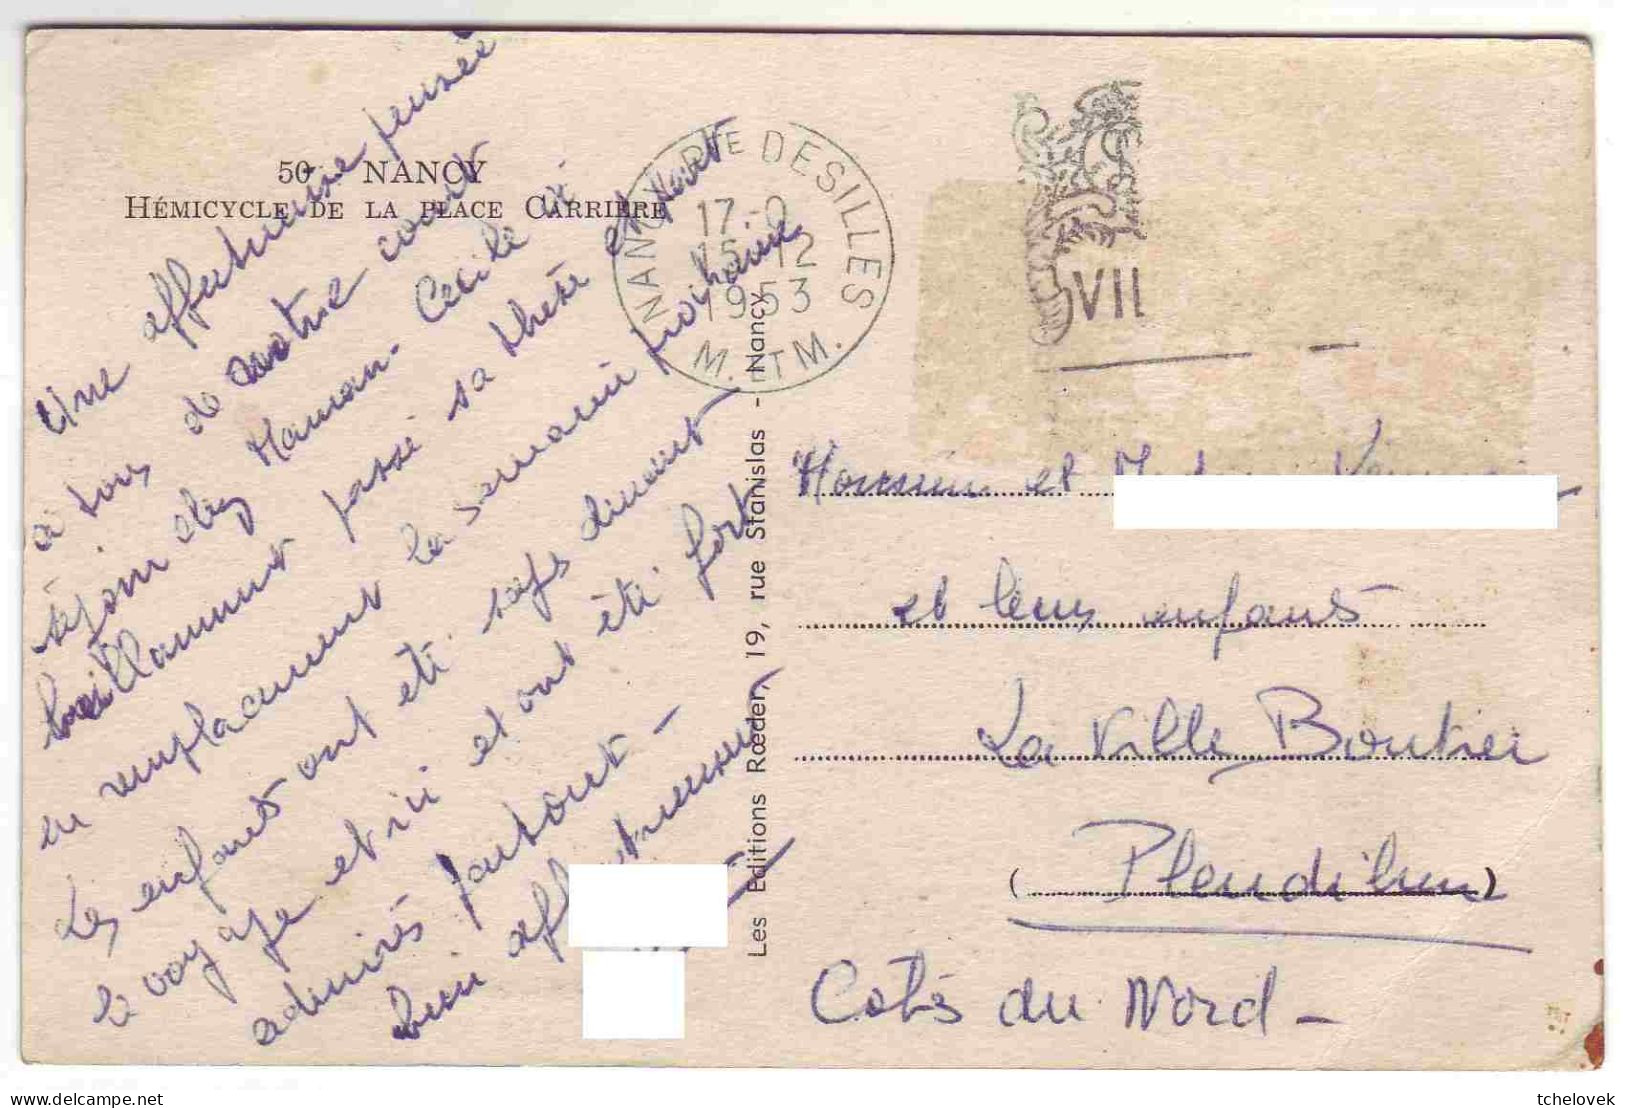 (54). Nancy. Hemicycle De La Place. Carriere 1953 & 1004 Place Stanislas & 39 Fontaine D'Amphitrite - Nancy